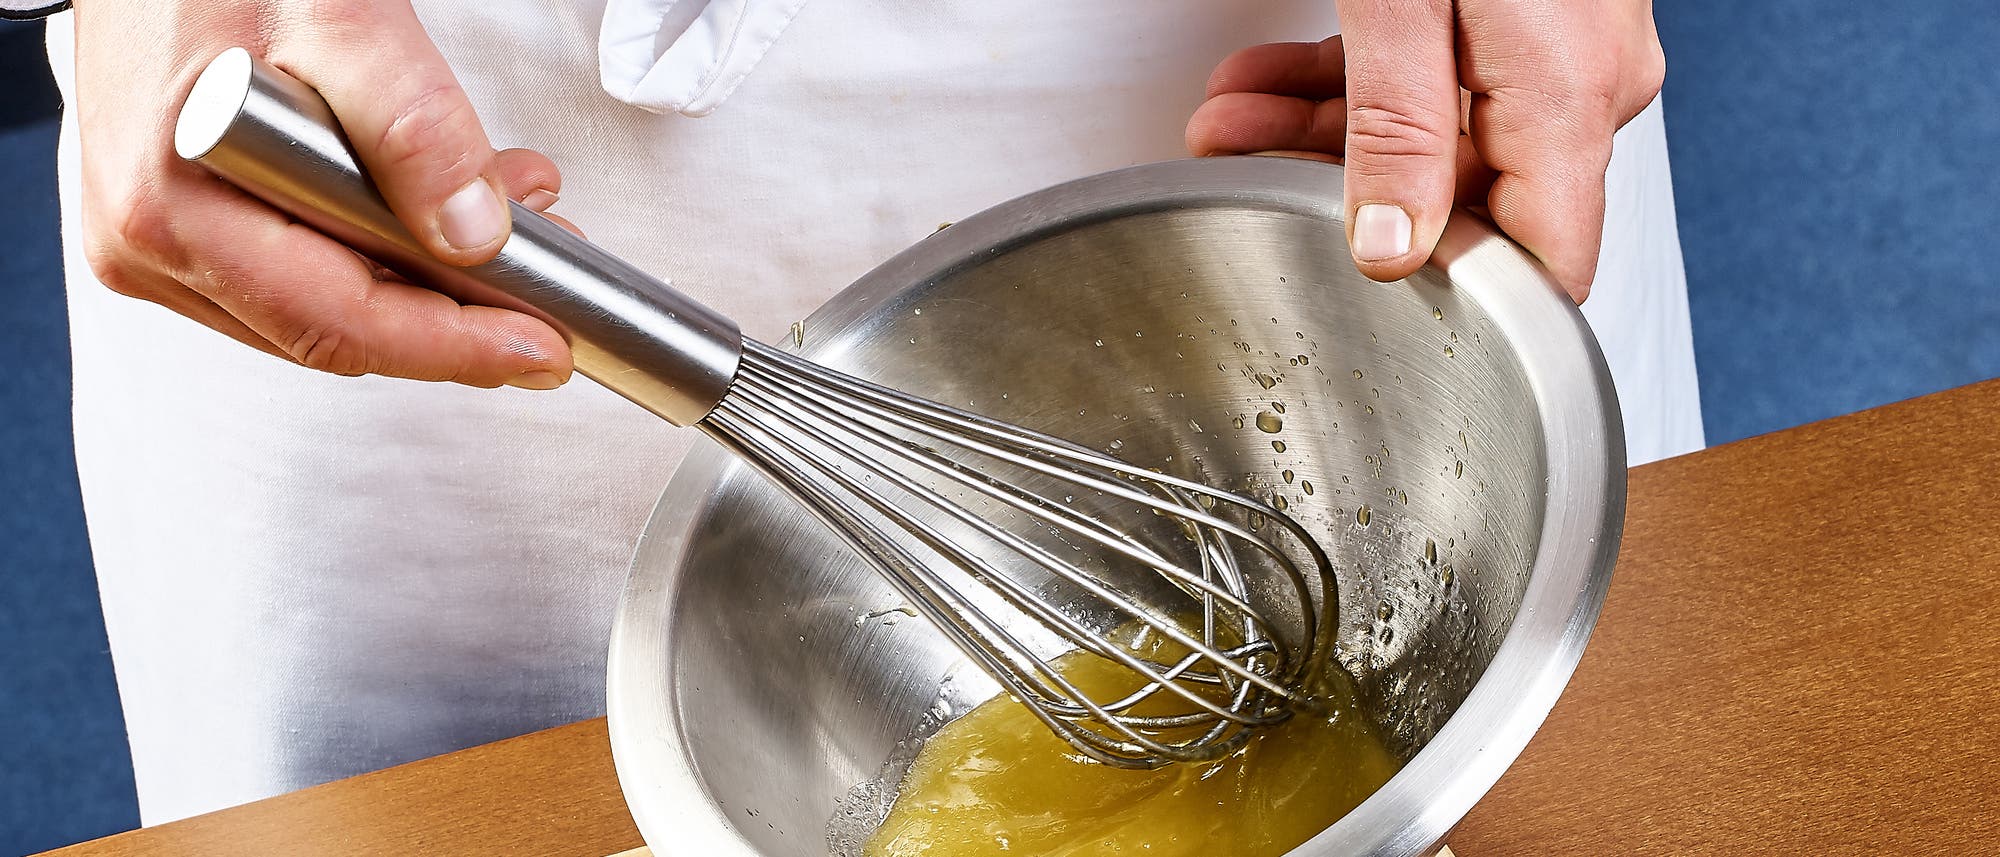 Herstellung von Mayonnaise in einer Edelstahlschüssel mit Handrührer.